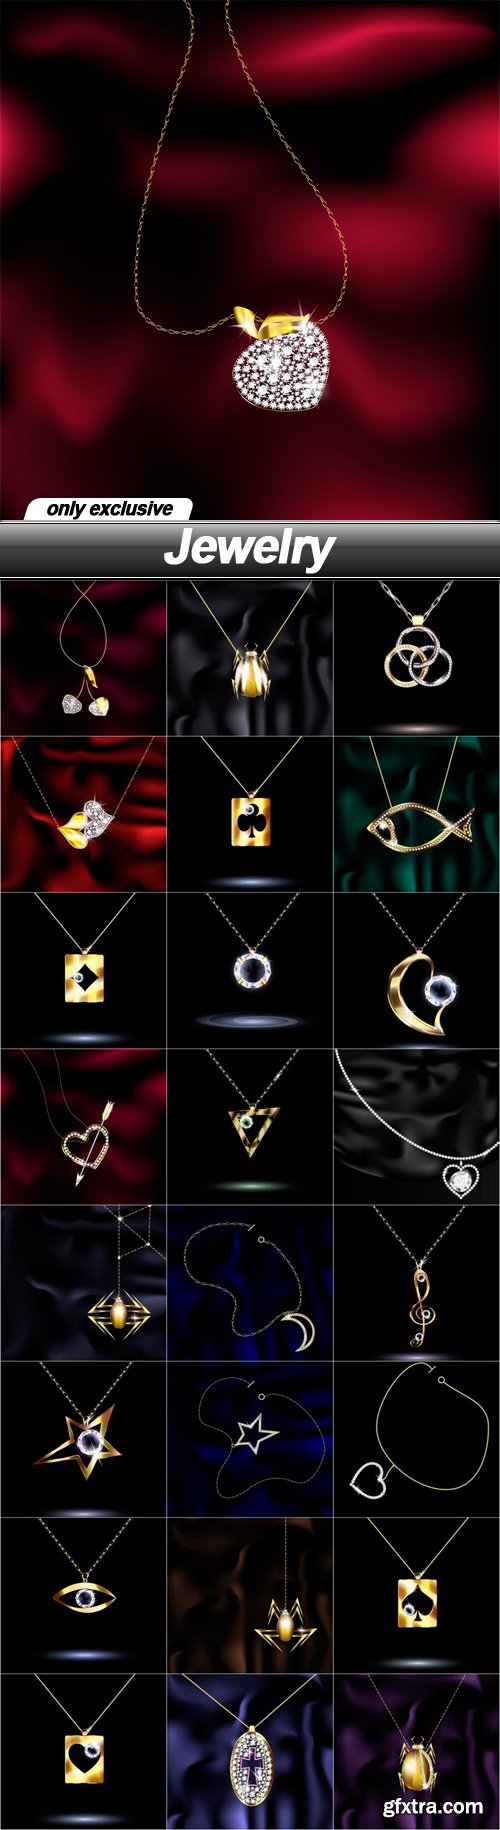 Jewelry - 25 EPS